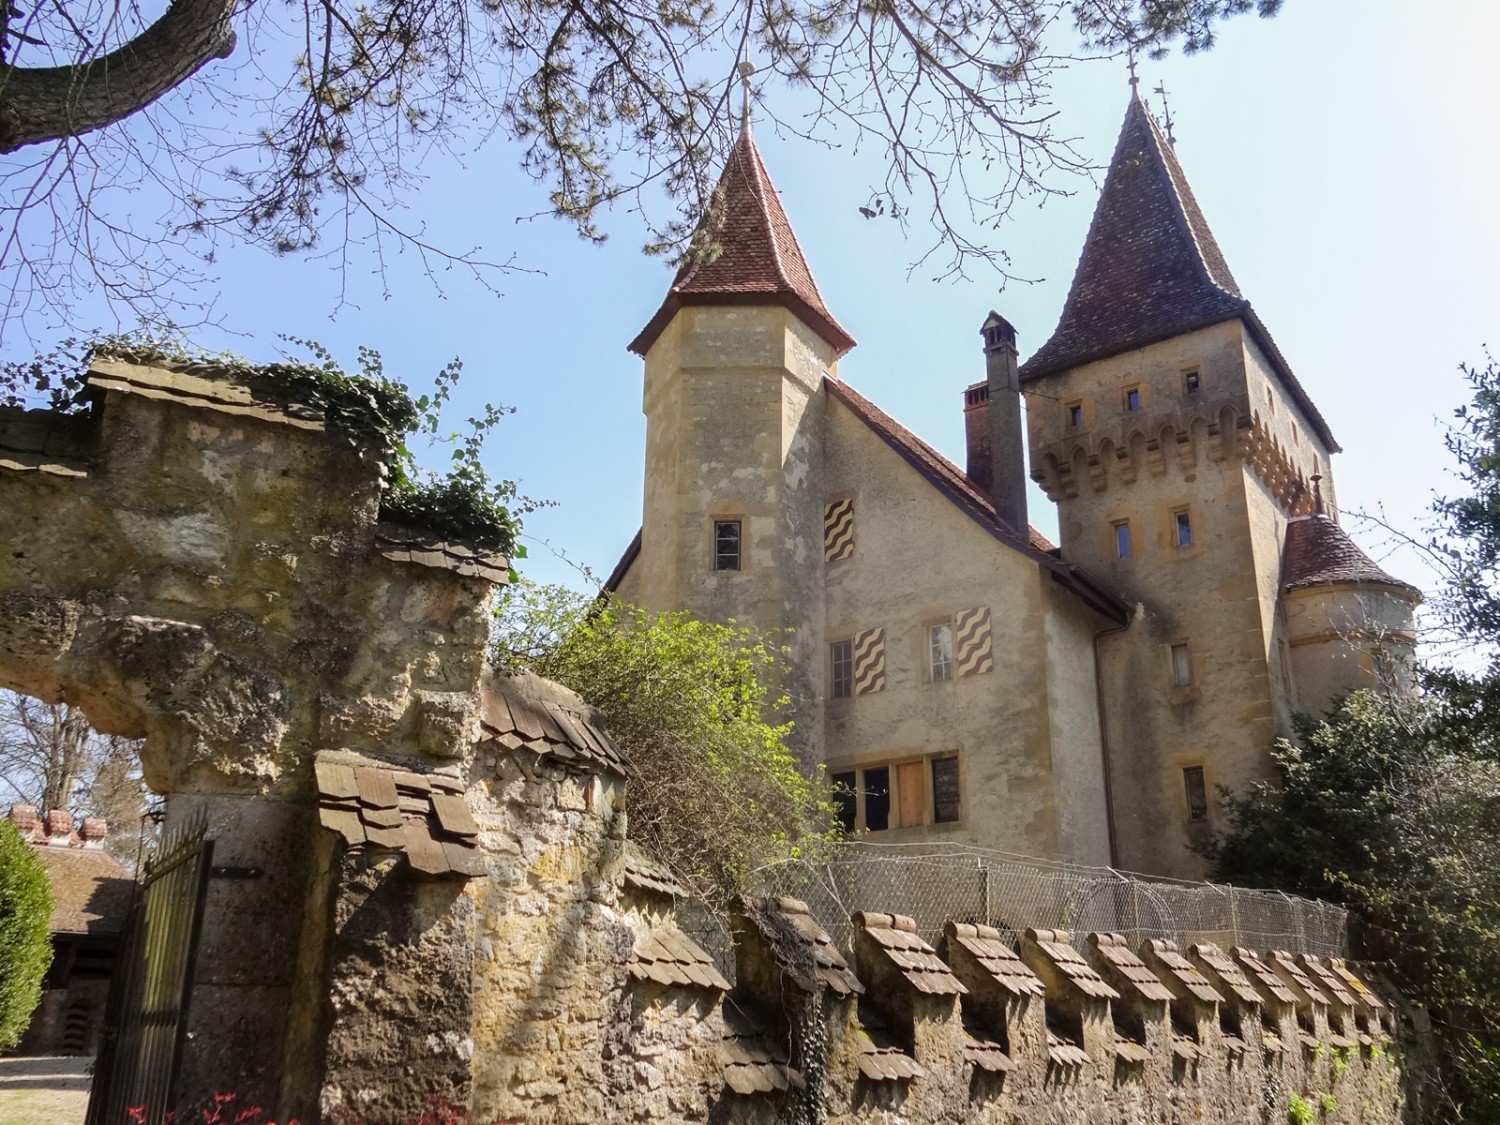 Surprenant et enchanteur, le château Jeanjaquet. Photo: Miroslaw Halaba